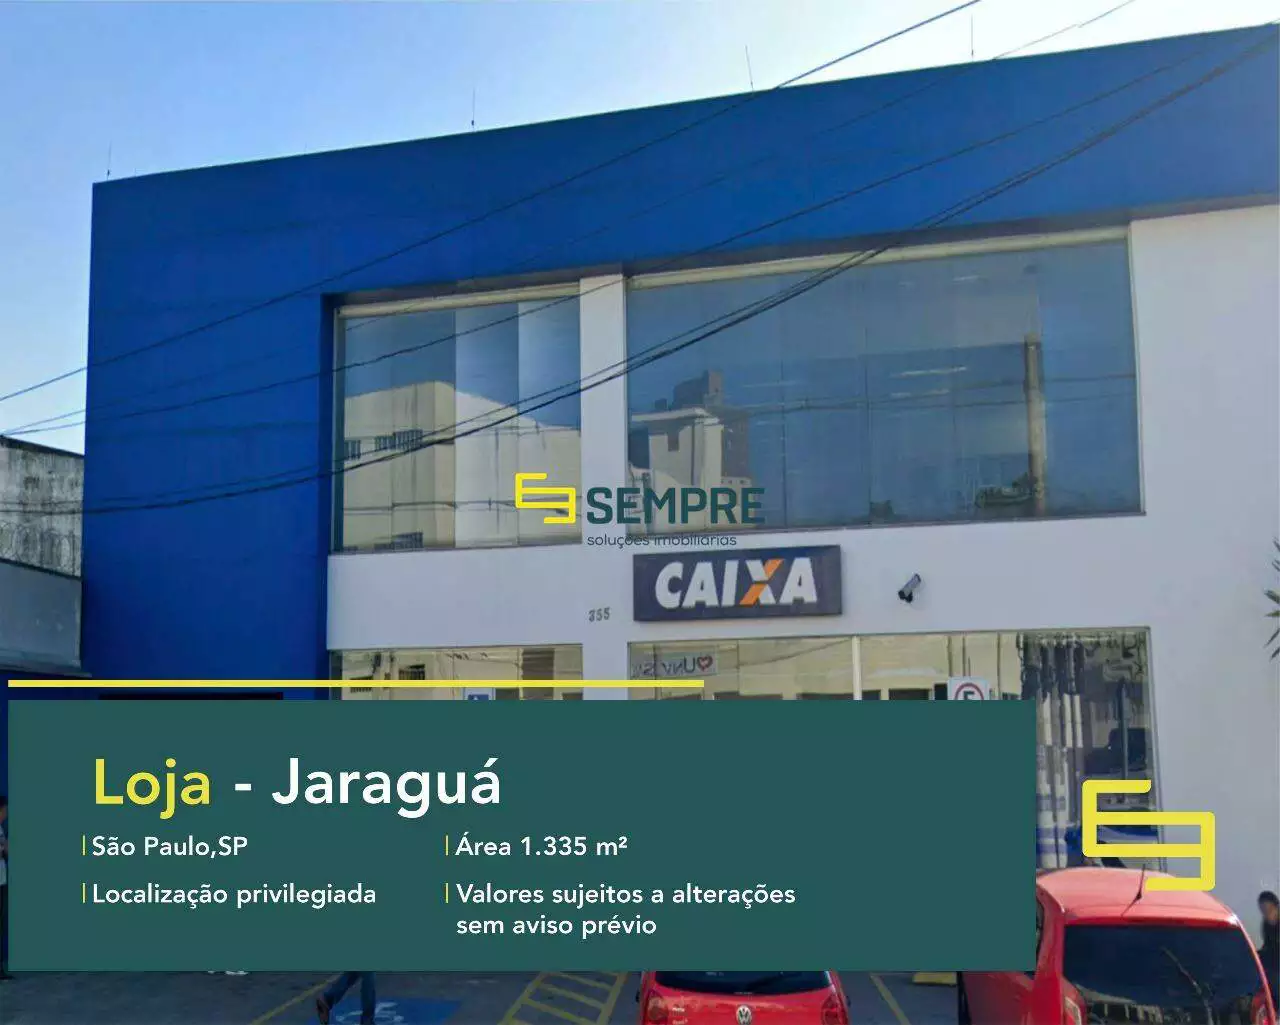 Loja para vender Jardim São João (Jaraguá) em São Paulo, em excelente localização. O estabelecimento comercial conta com área de 1.335,51 m².